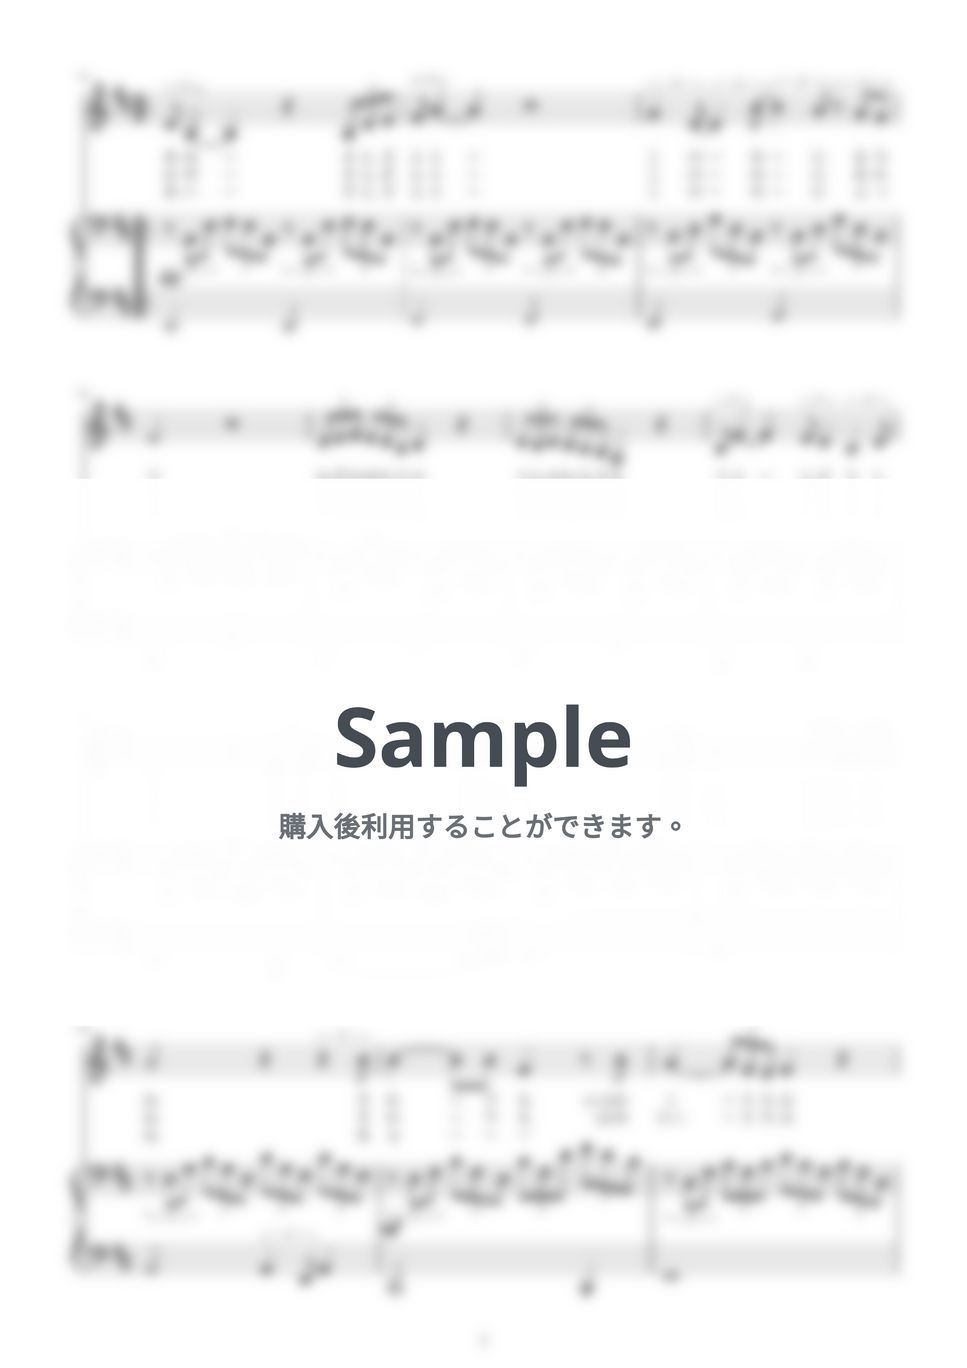 美空ひばり - 愛燦燦：メロディー&ピアノ伴奏(二長調:D) by pyu_fumen